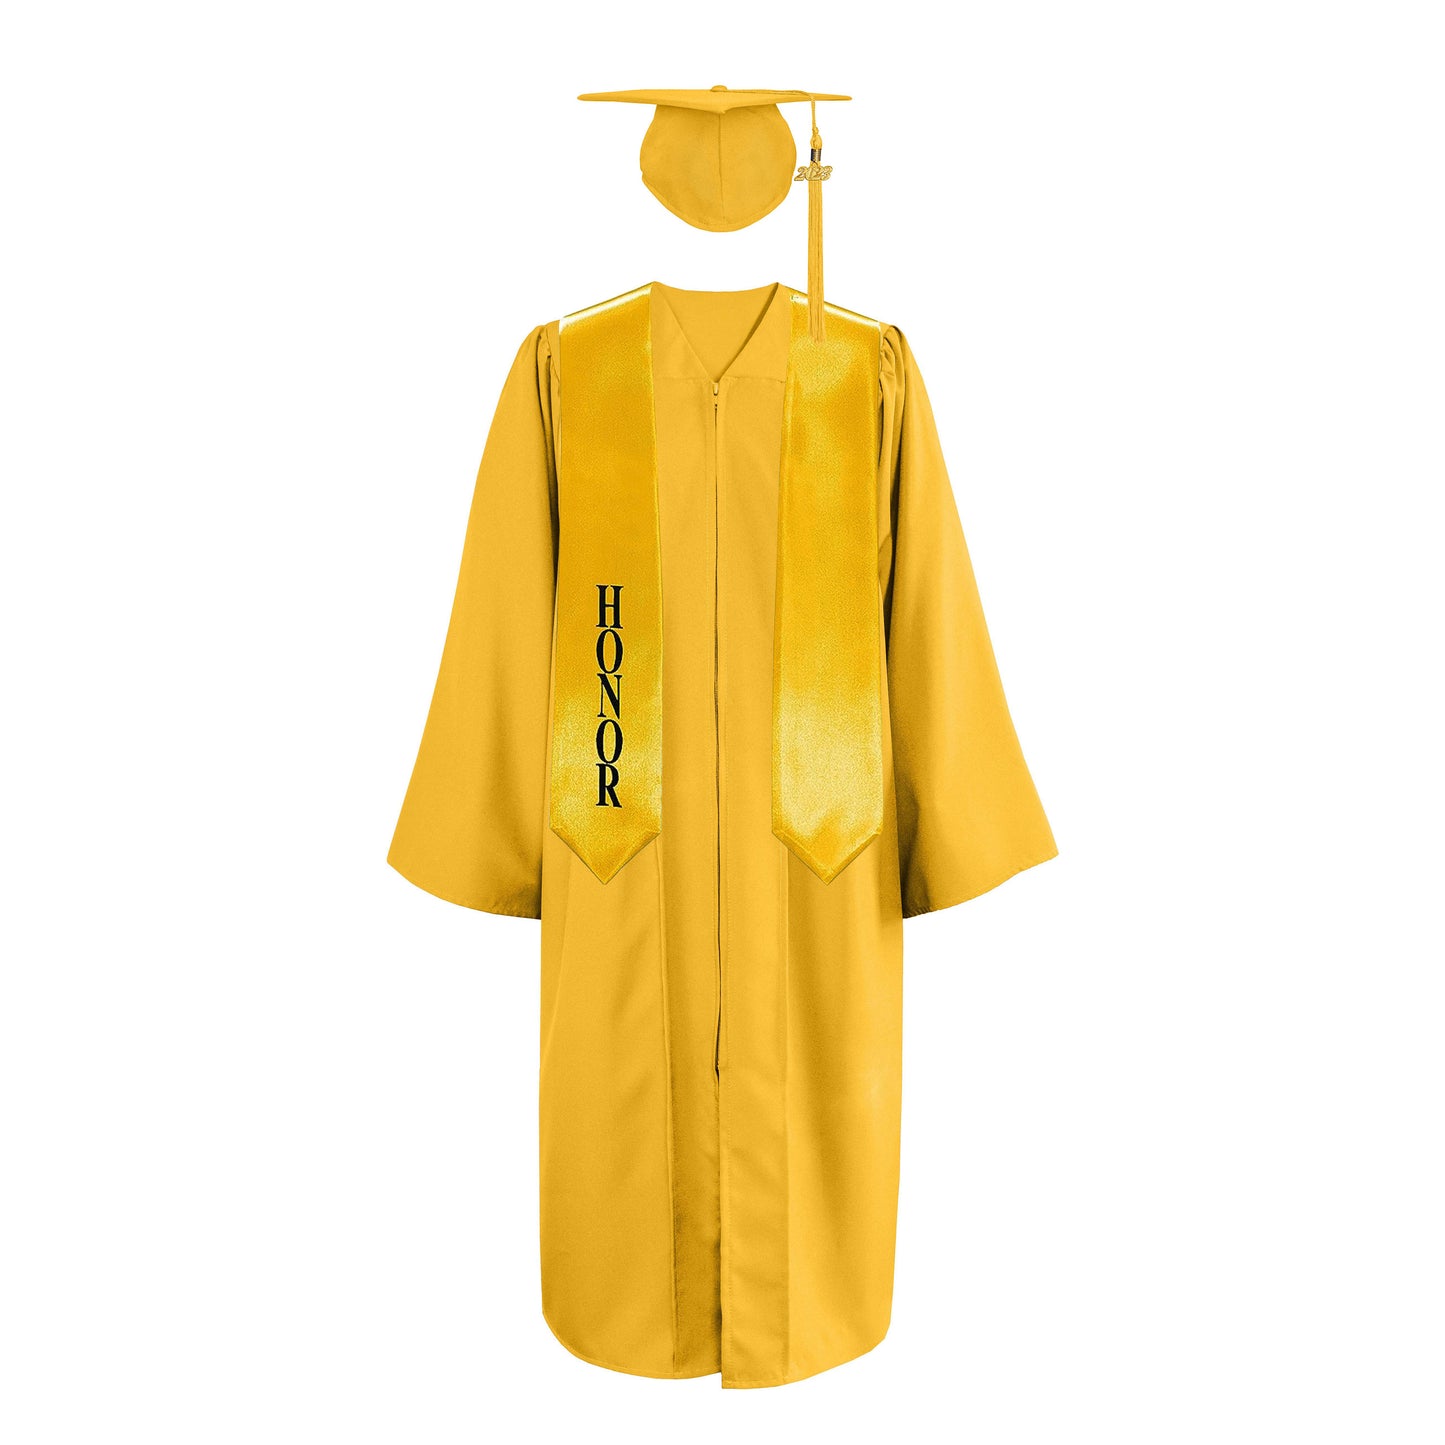 Matte Cap, Gown,Tassel & Honor Stole 60” Package | graduate graduation gown-CA graduation